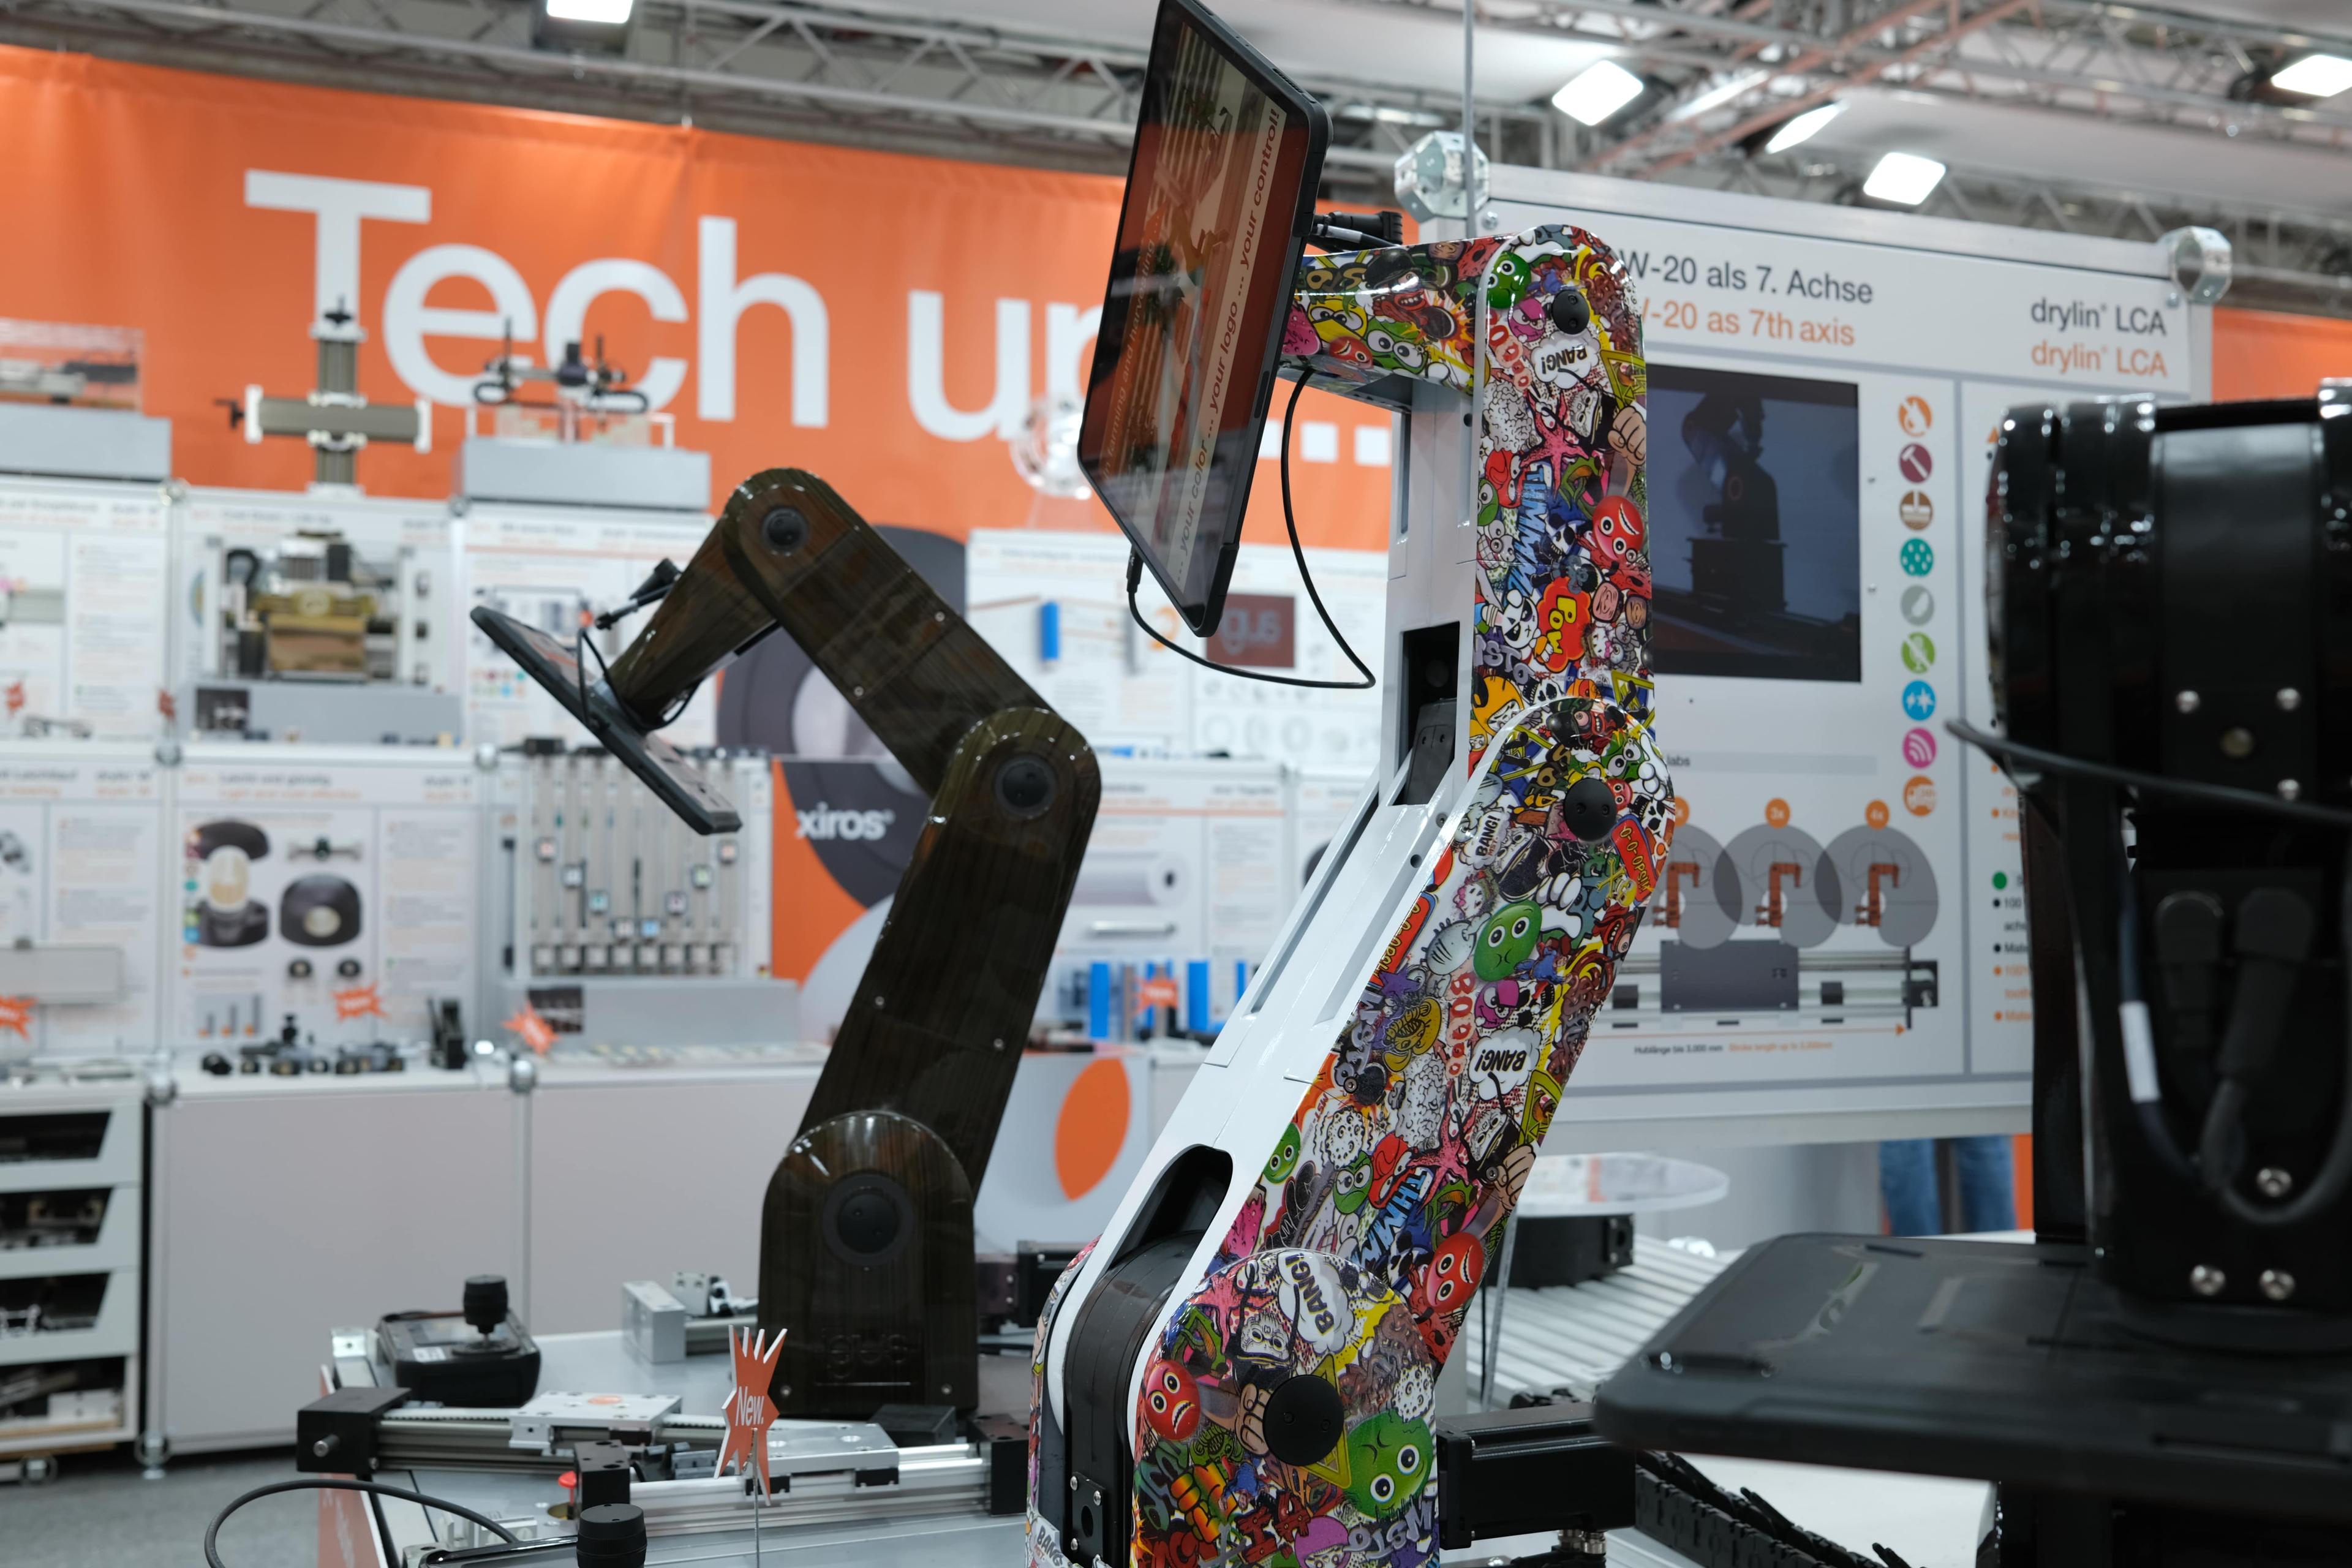 Robots as eye-catcher at trade fair